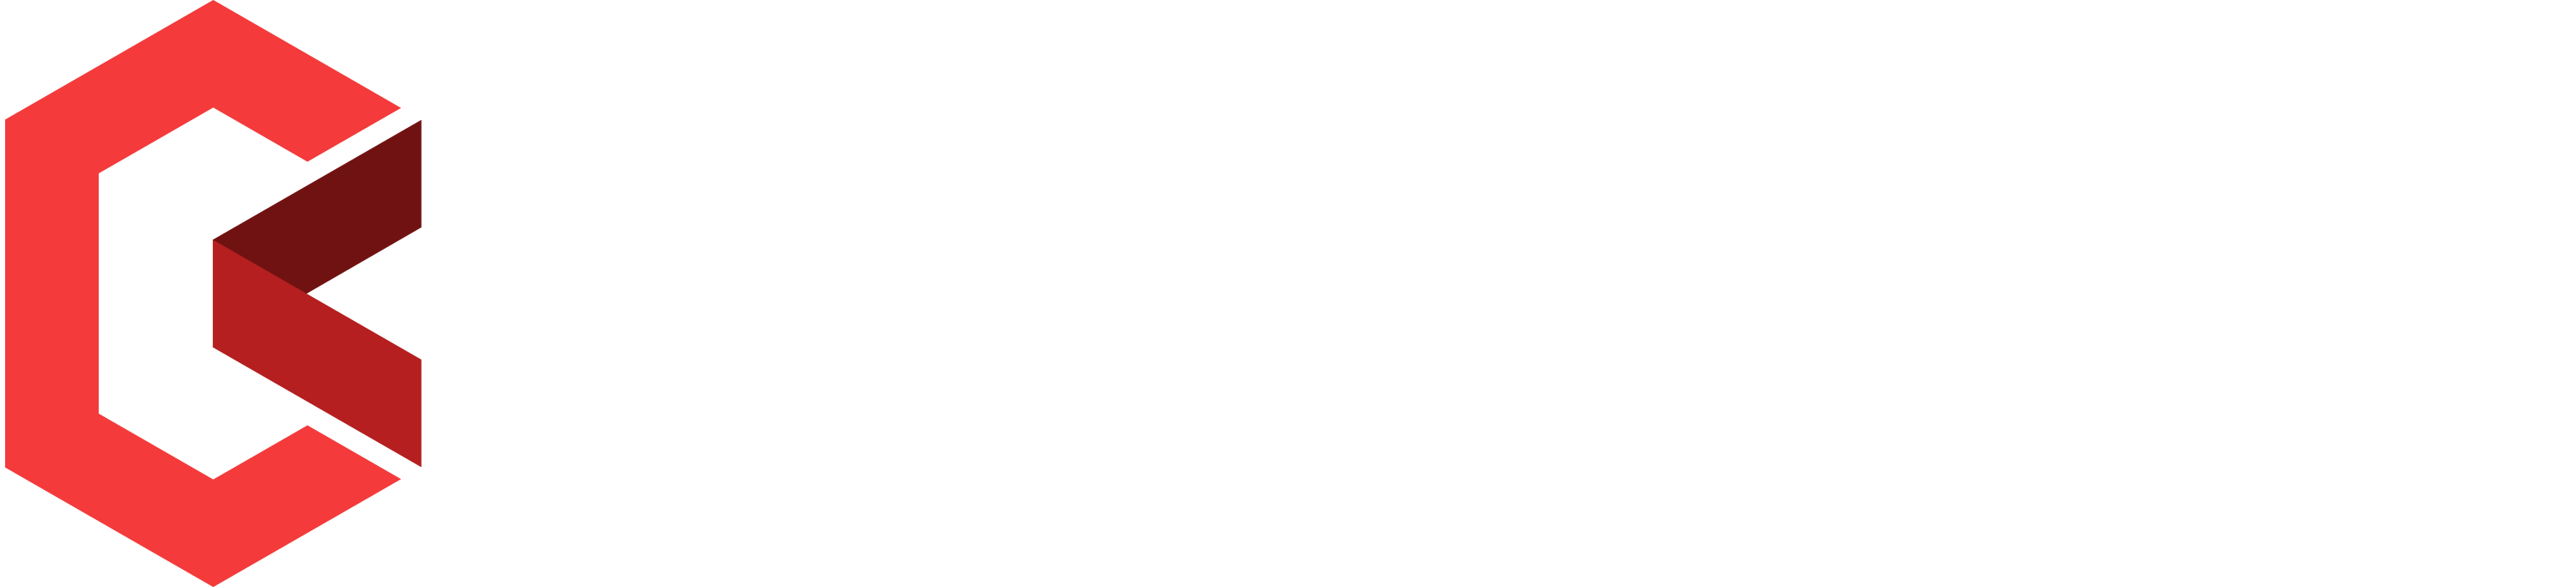 bankcex